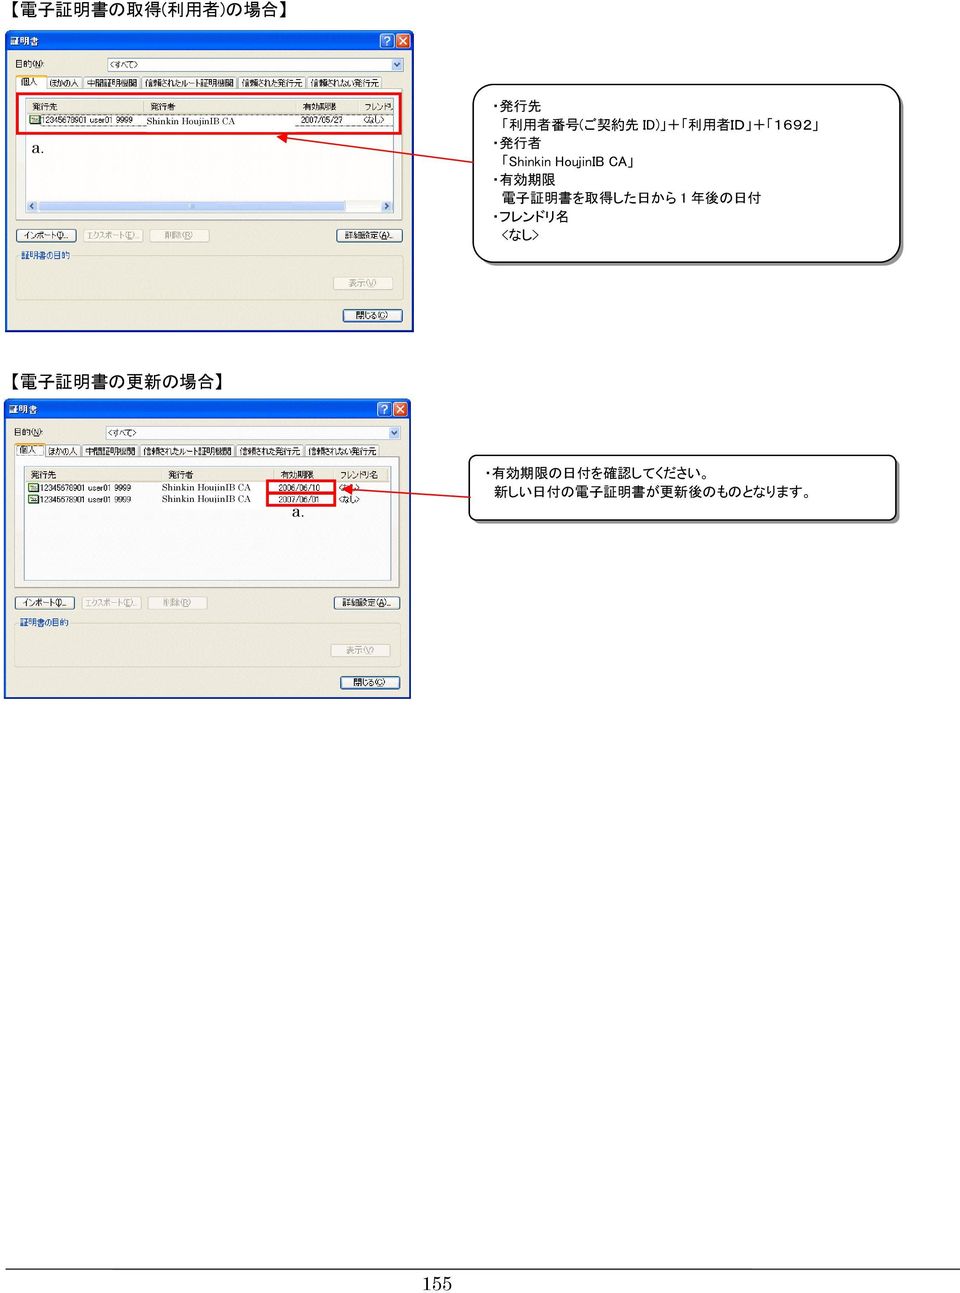 から 1 年 後 の 日 付 フレンドリ 名 <なし> 電 子 証 明 書 の 更 新 の 場 合 Shinkin HoujinIB CA Shinkin